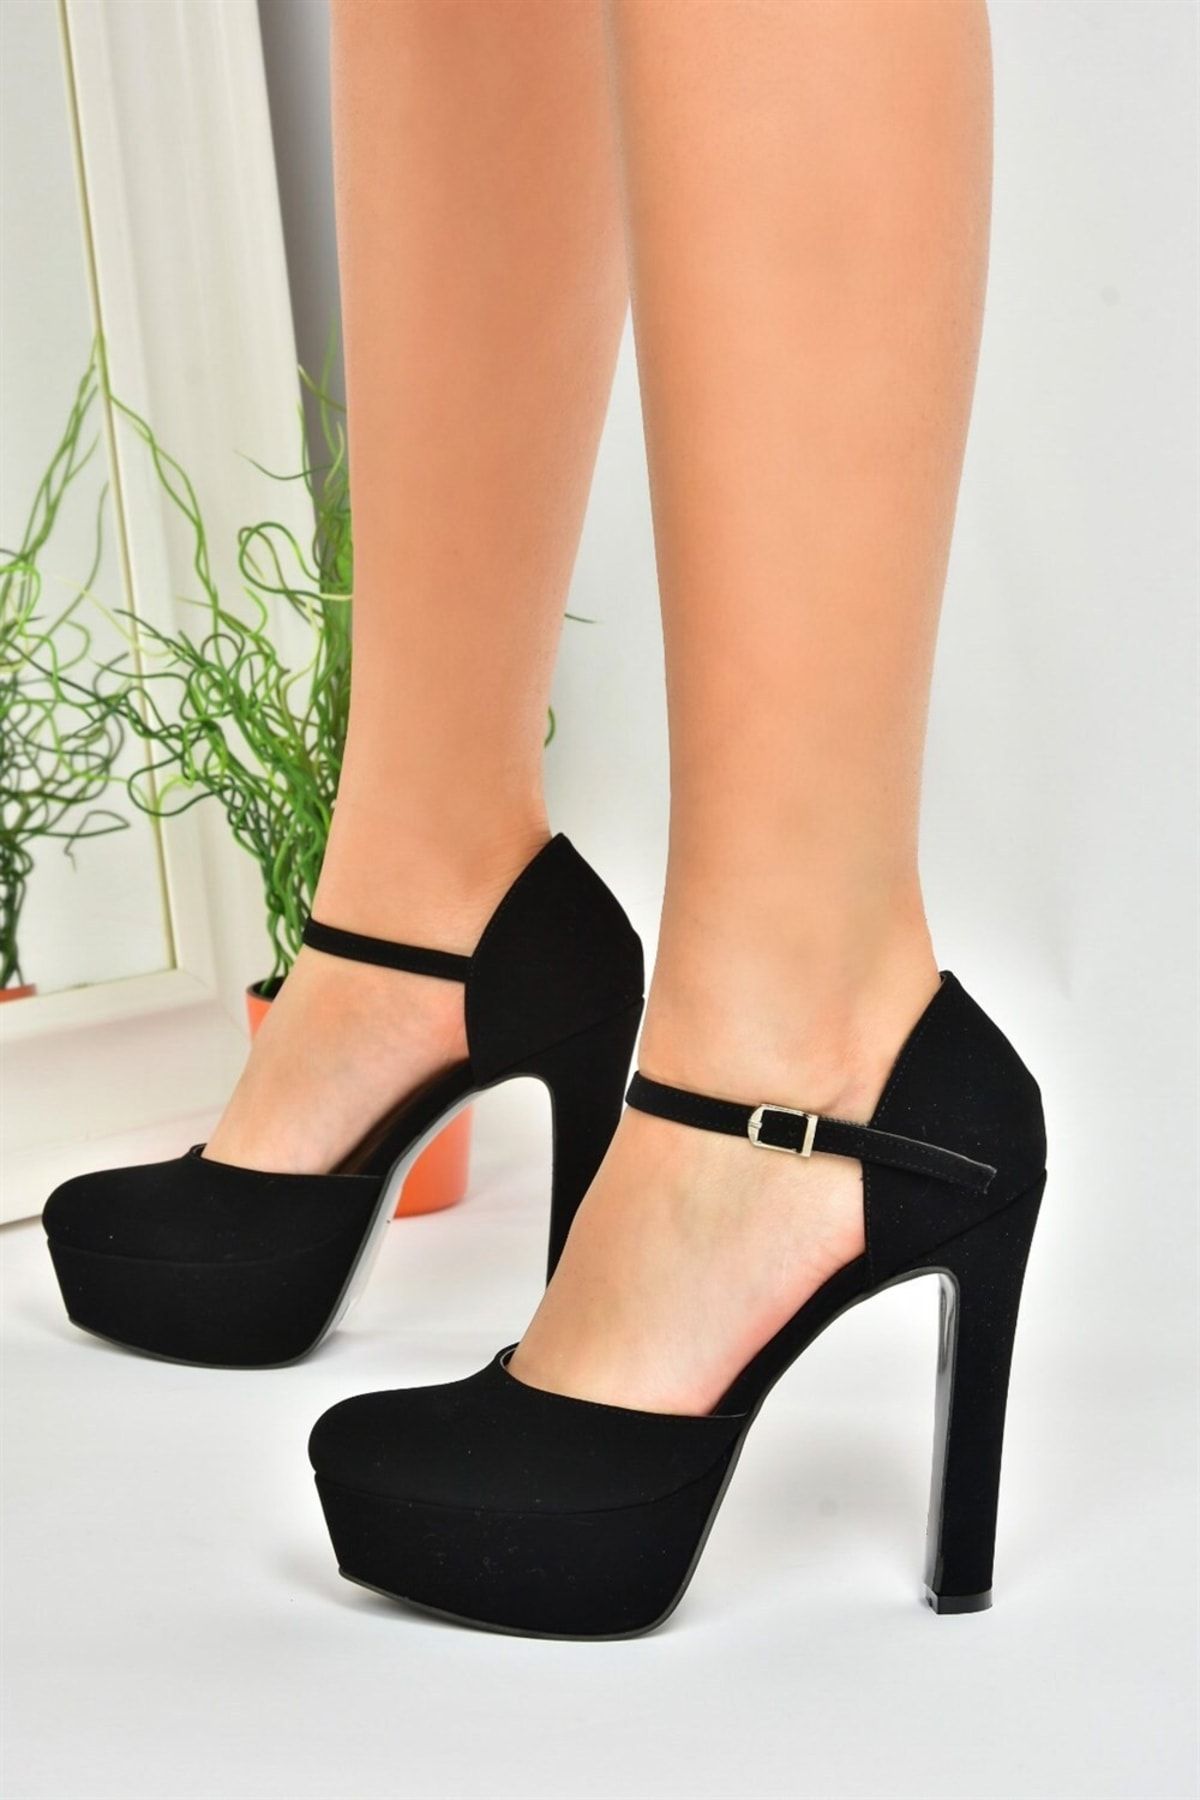 Fox Shoes Siyah Nubuk Platform Kalın Yüksek Topuklu Kadın Ayakkabı M246002101